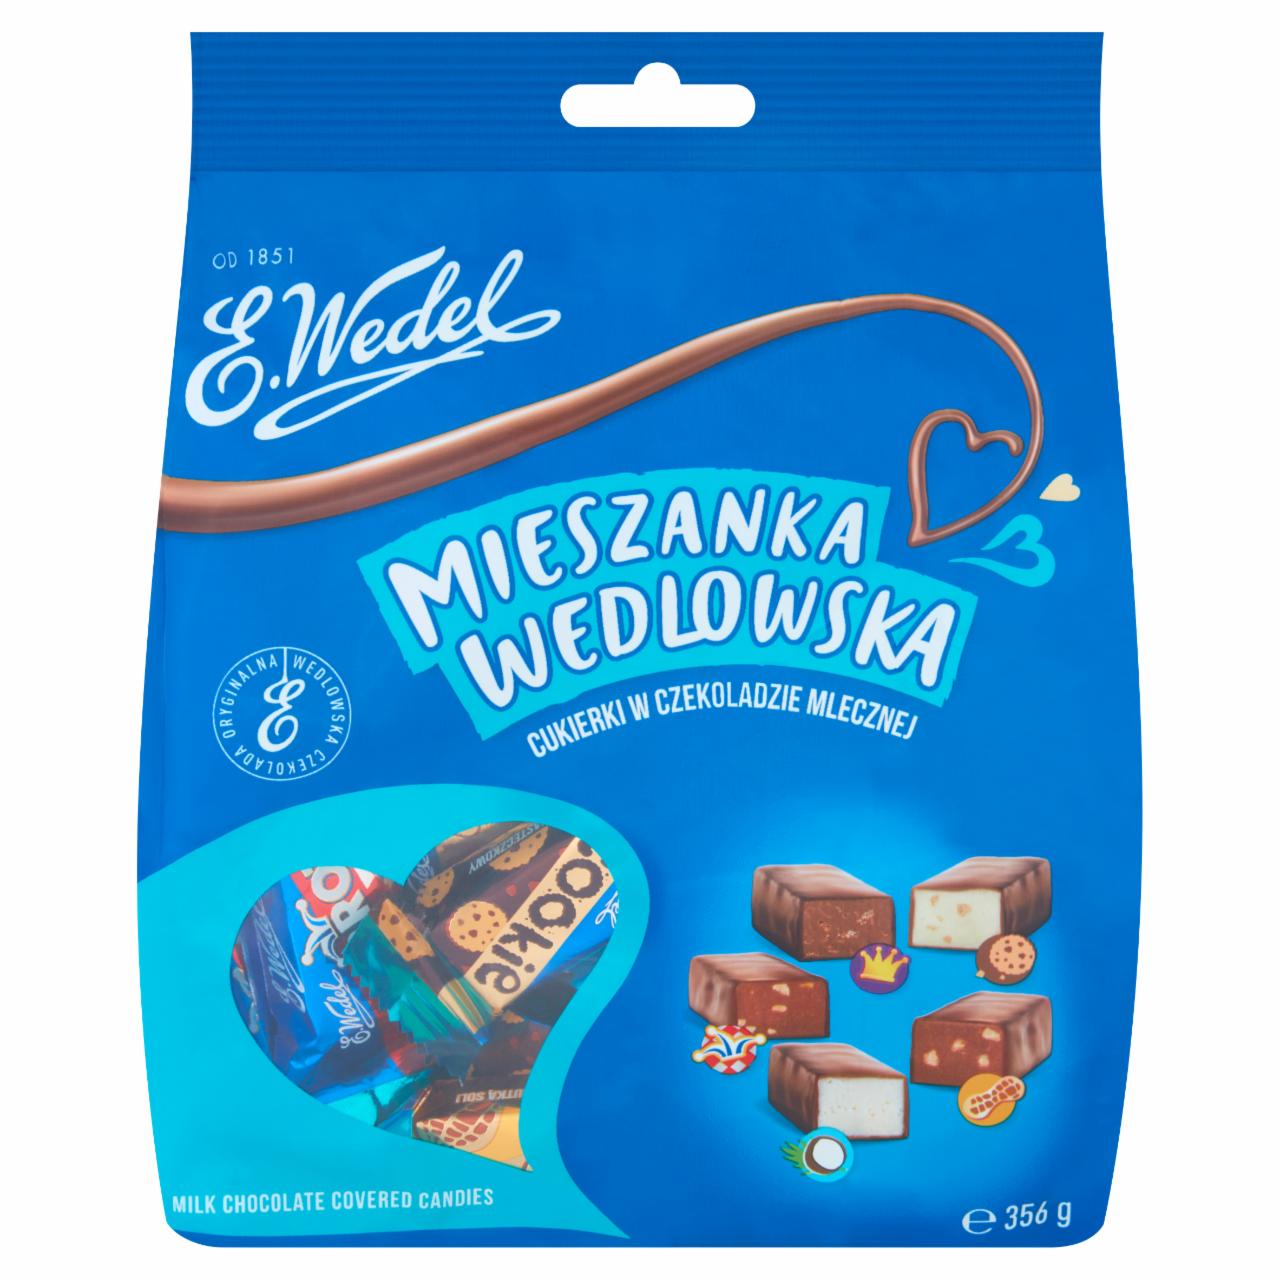 Zdjęcia - E. Wedel Mieszanka Wedlowska Cukierki w czekoladzie mlecznej 356 g